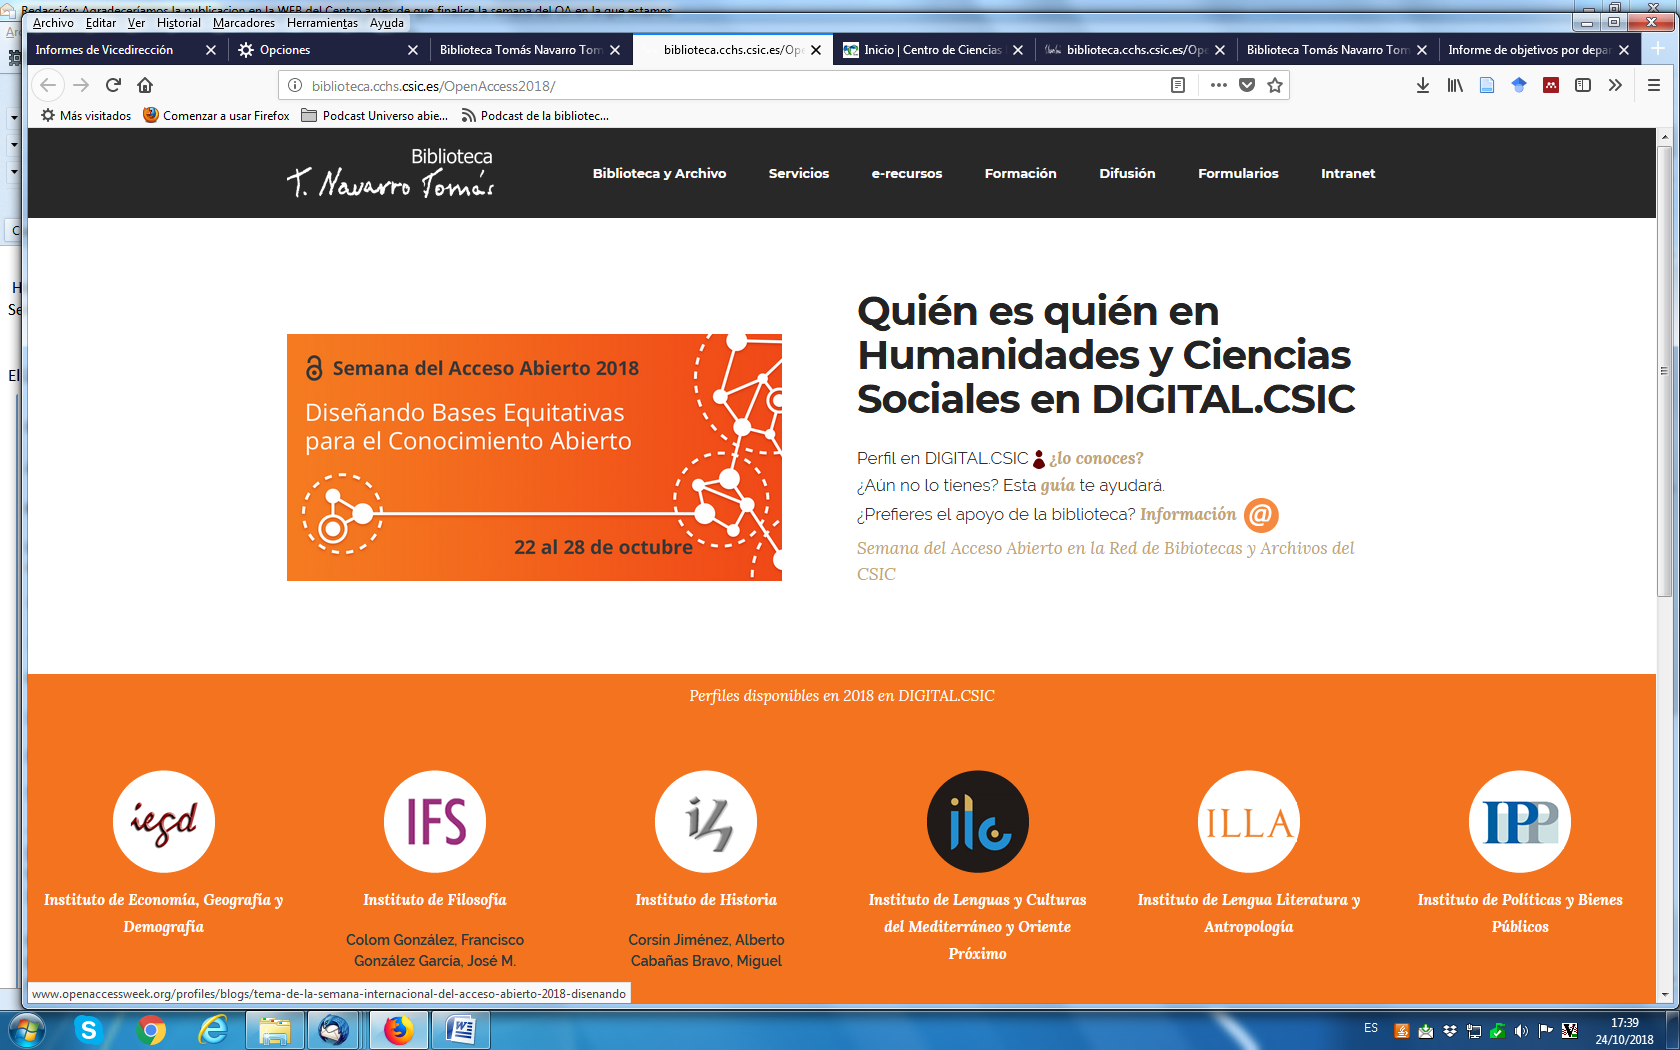 Quién es Quién en Humanidades y Ciencias Sociales en Digital CSIC